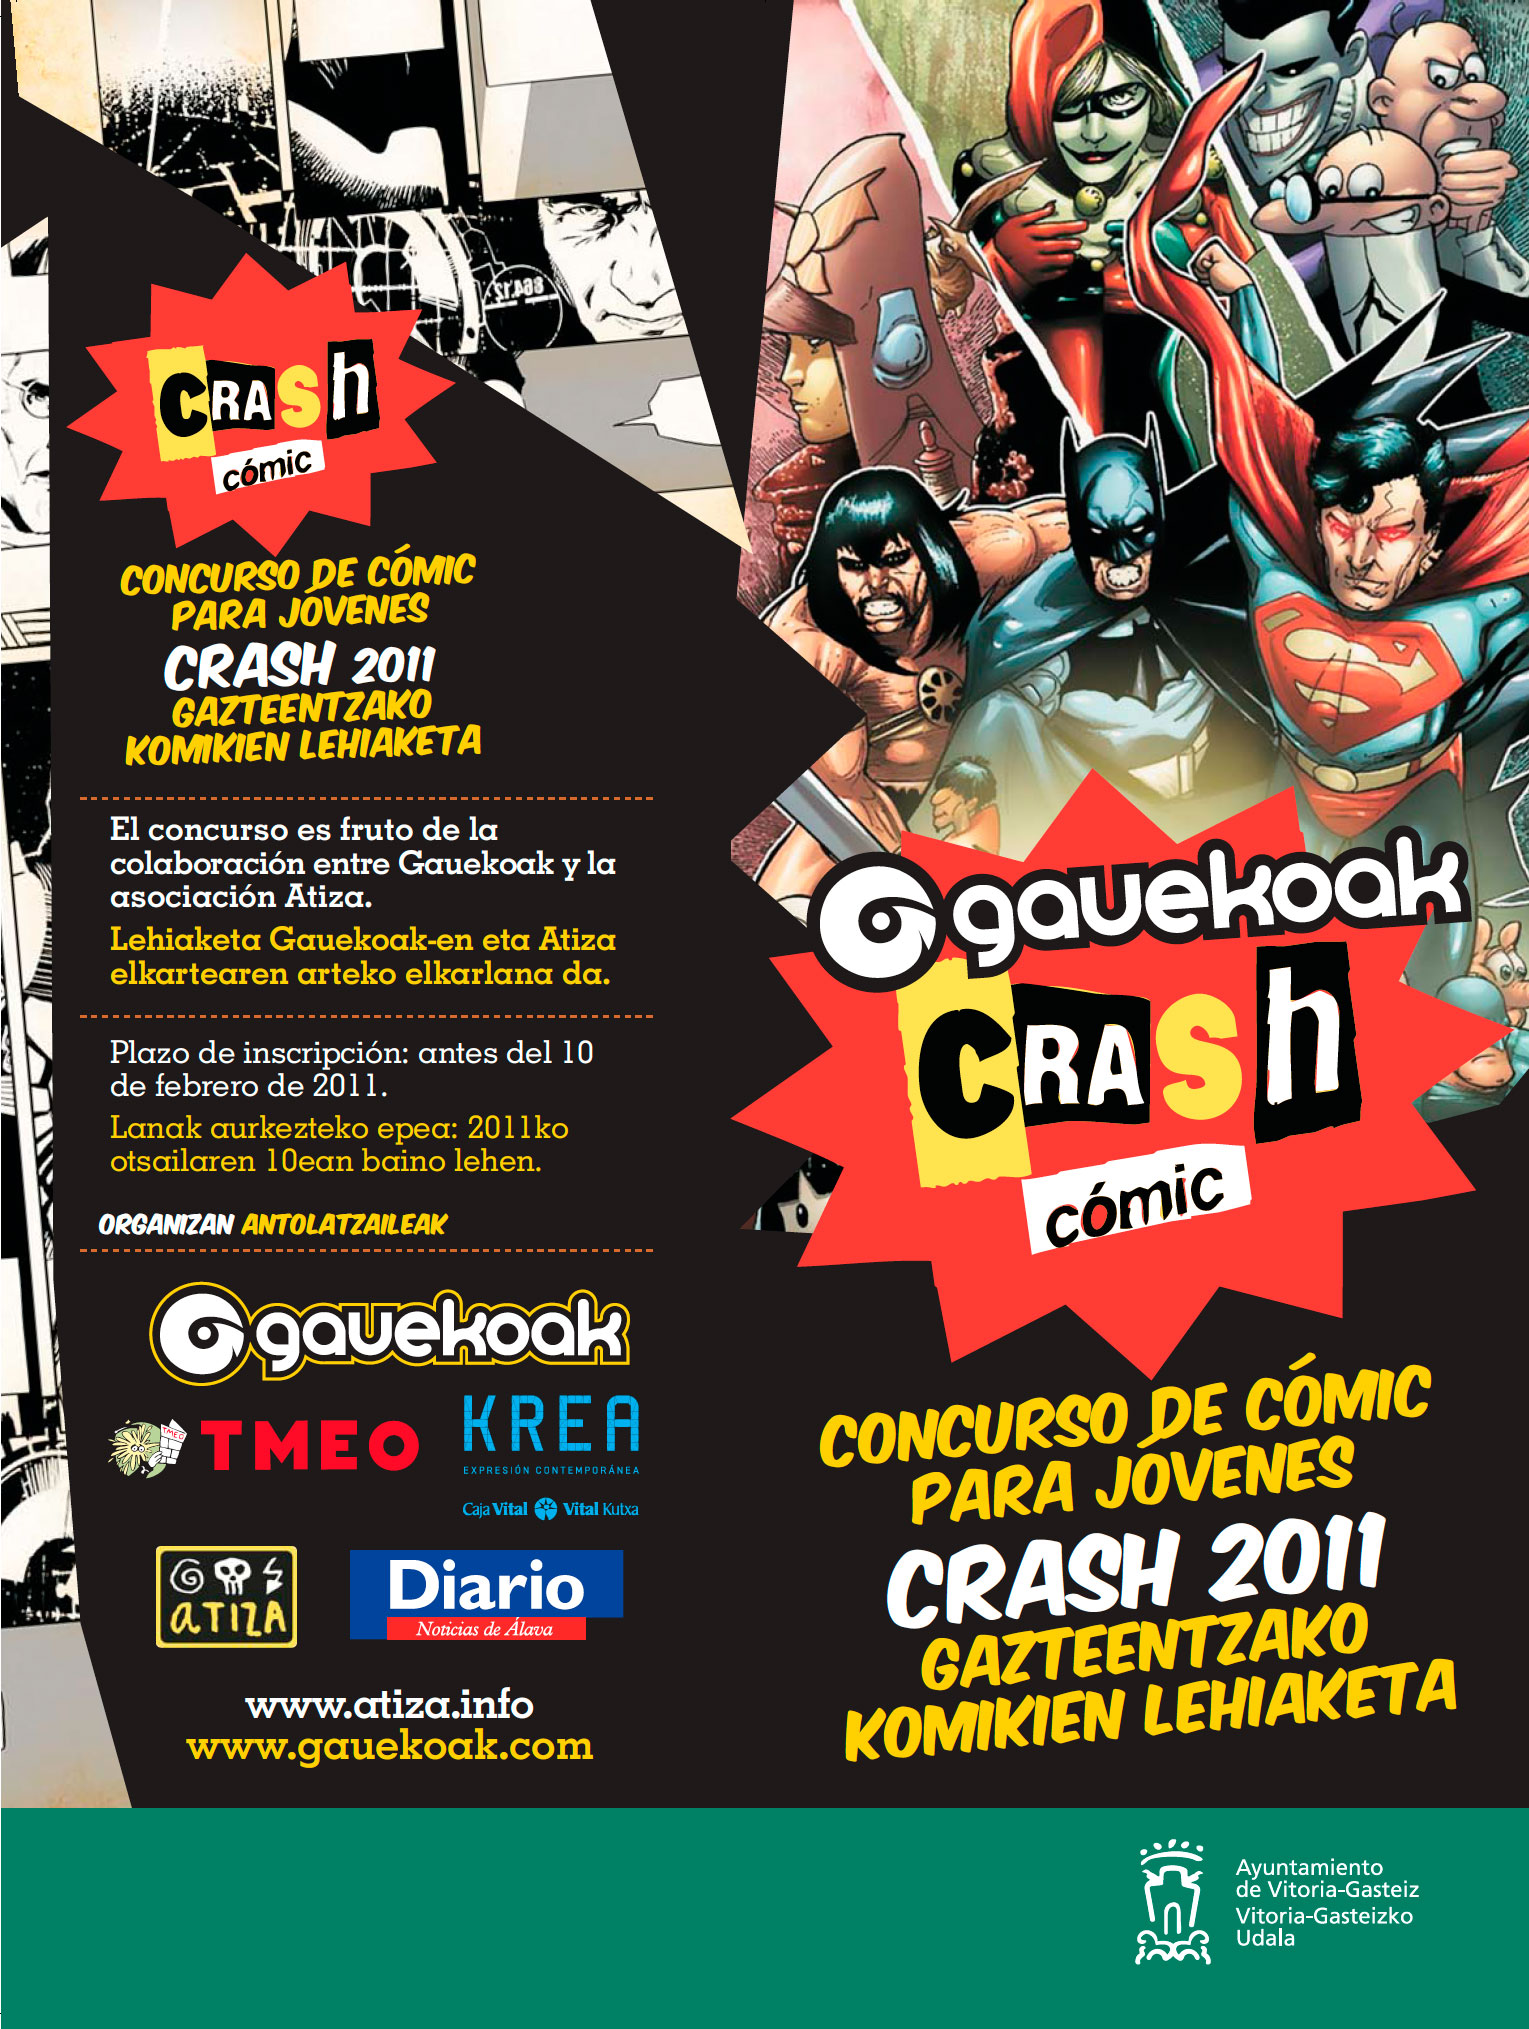 Crash Comic 2011 lehiaketa, otsailaren 10a arte